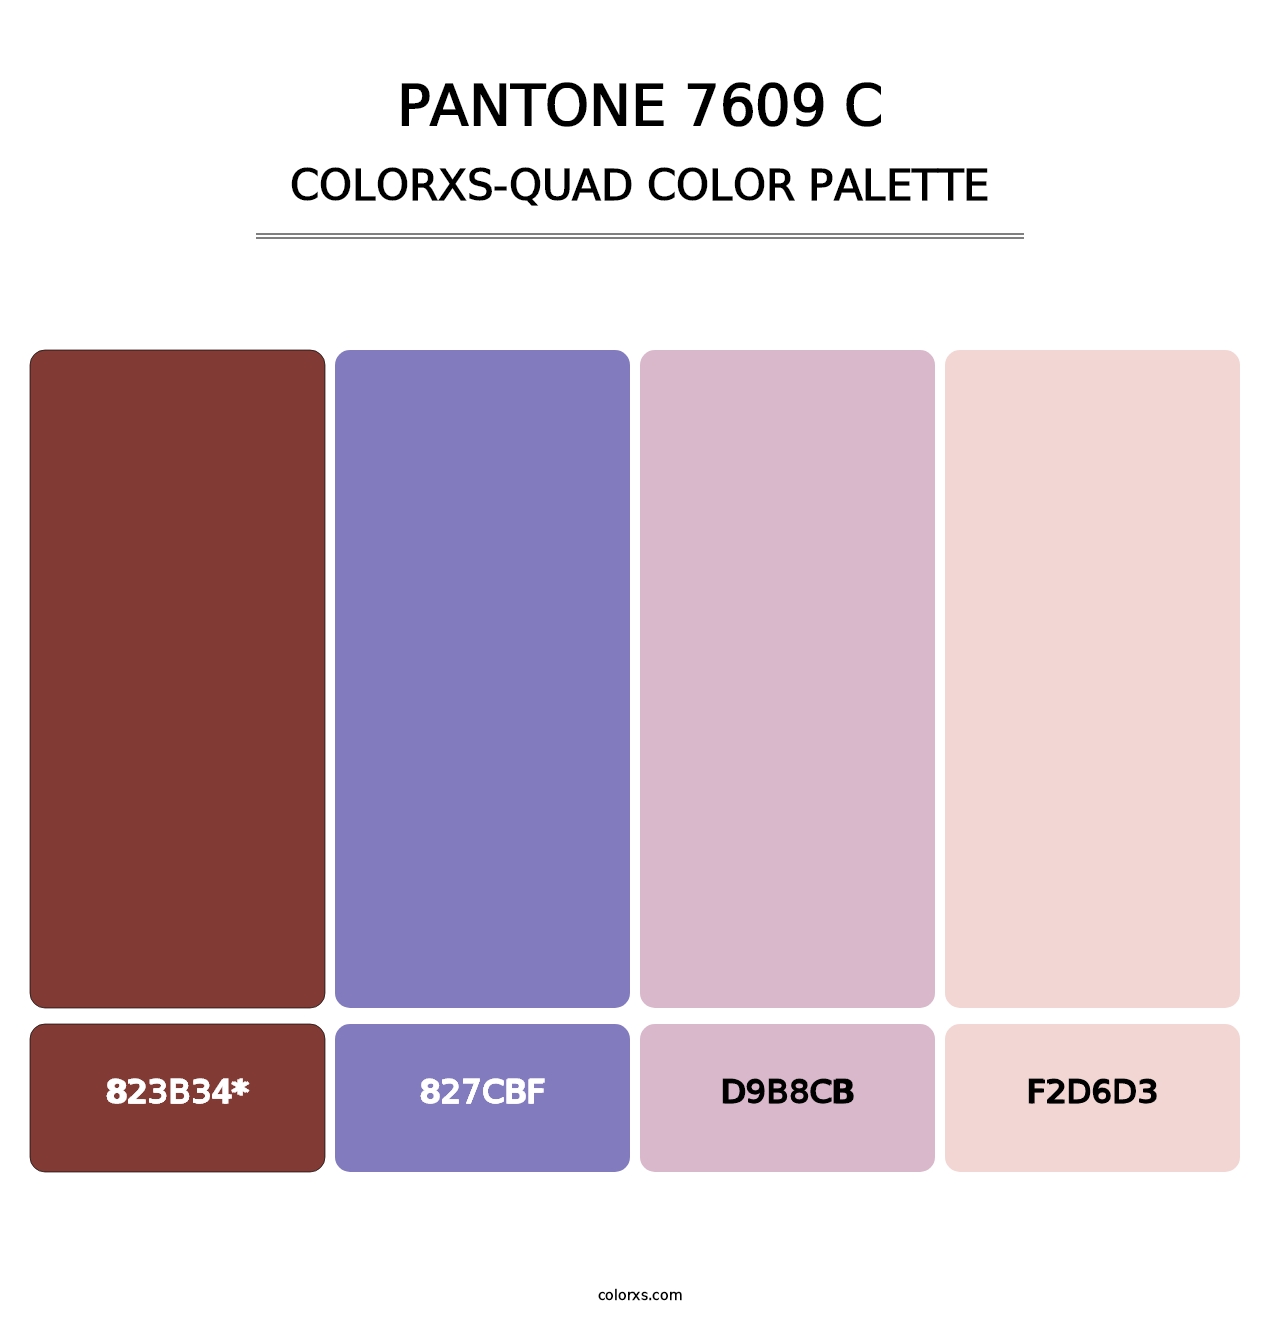 PANTONE 7609 C - Colorxs Quad Palette